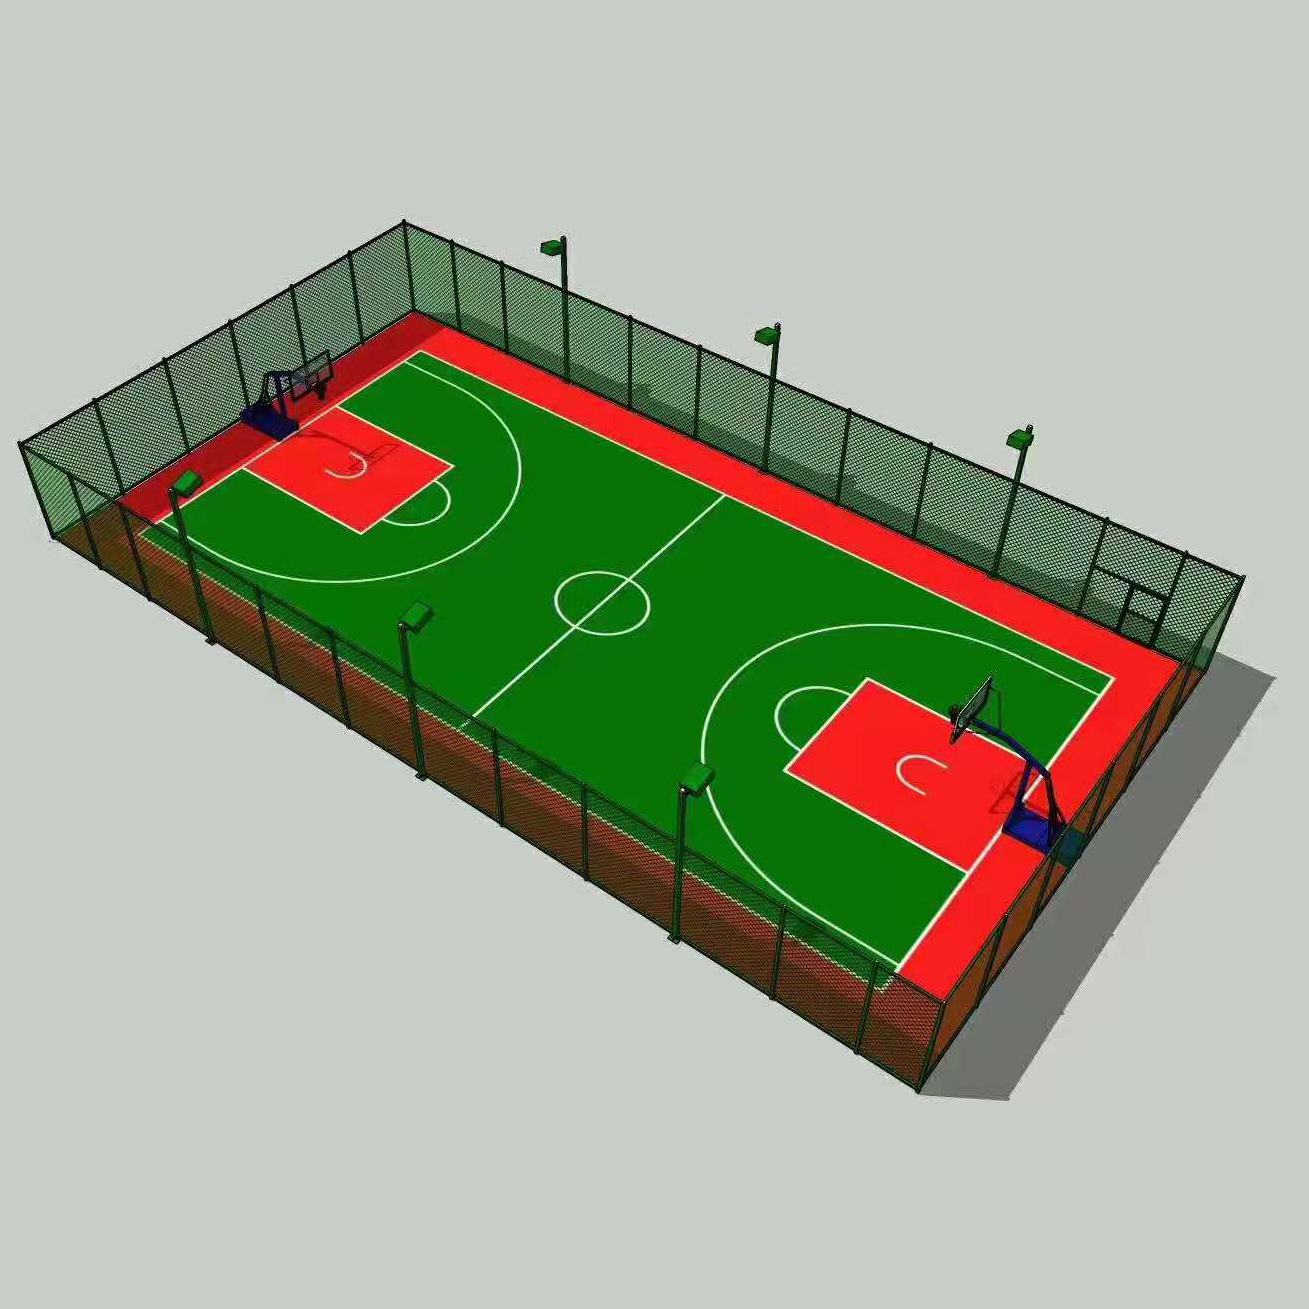 高圍網籃球場